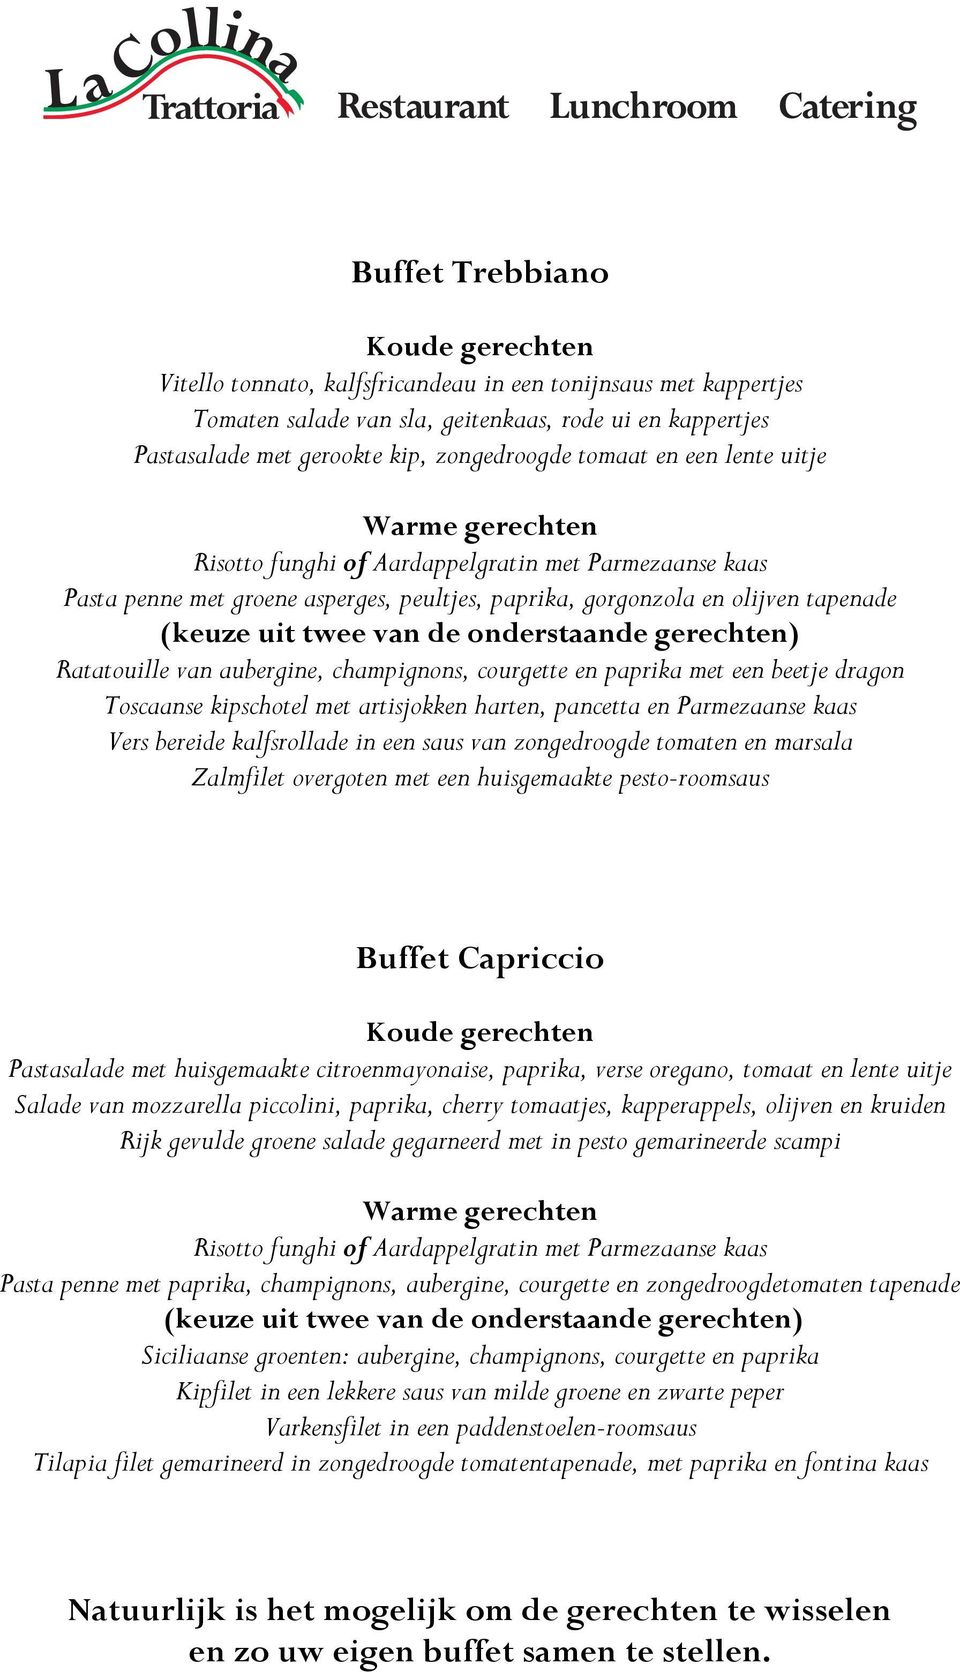 gerechten) Ratatouille van aubergine, champignons, courgette en paprika met een beetje dragon Toscaanse kipschotel met artisjokken harten, pancetta en Parmezaanse kaas Vers bereide kalfsrollade in